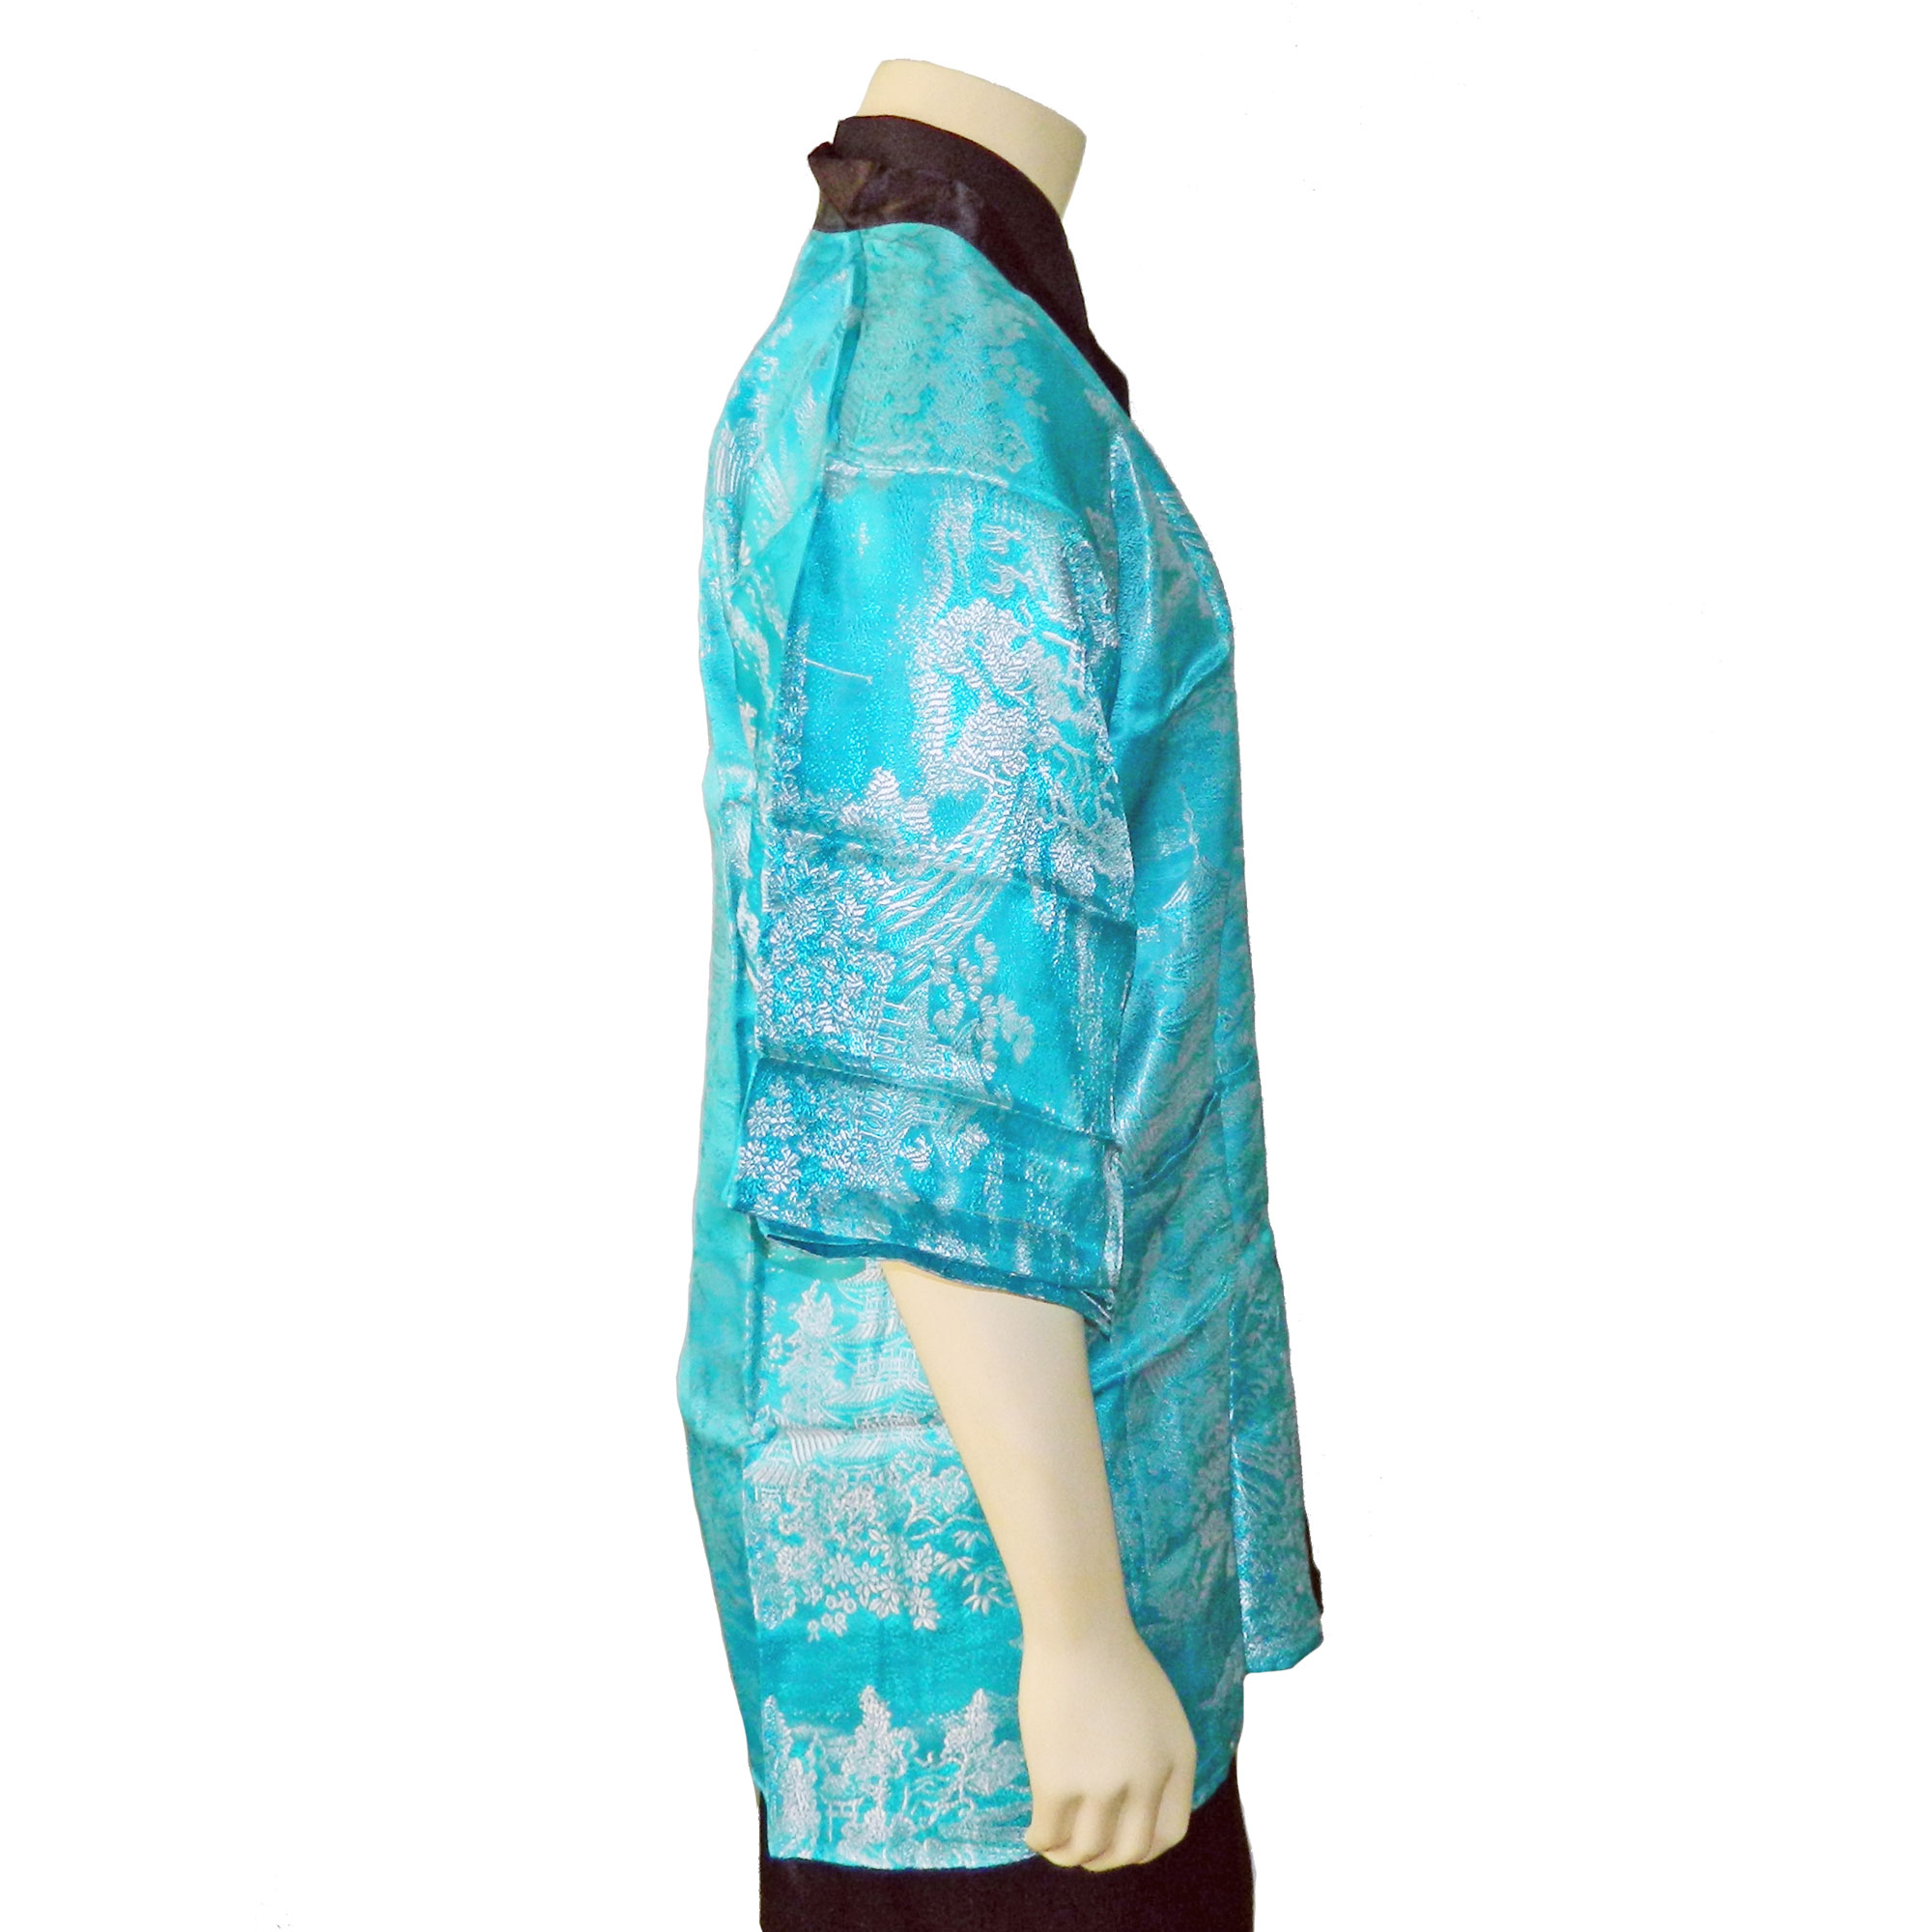 Vintage Kimono style smoking jacket